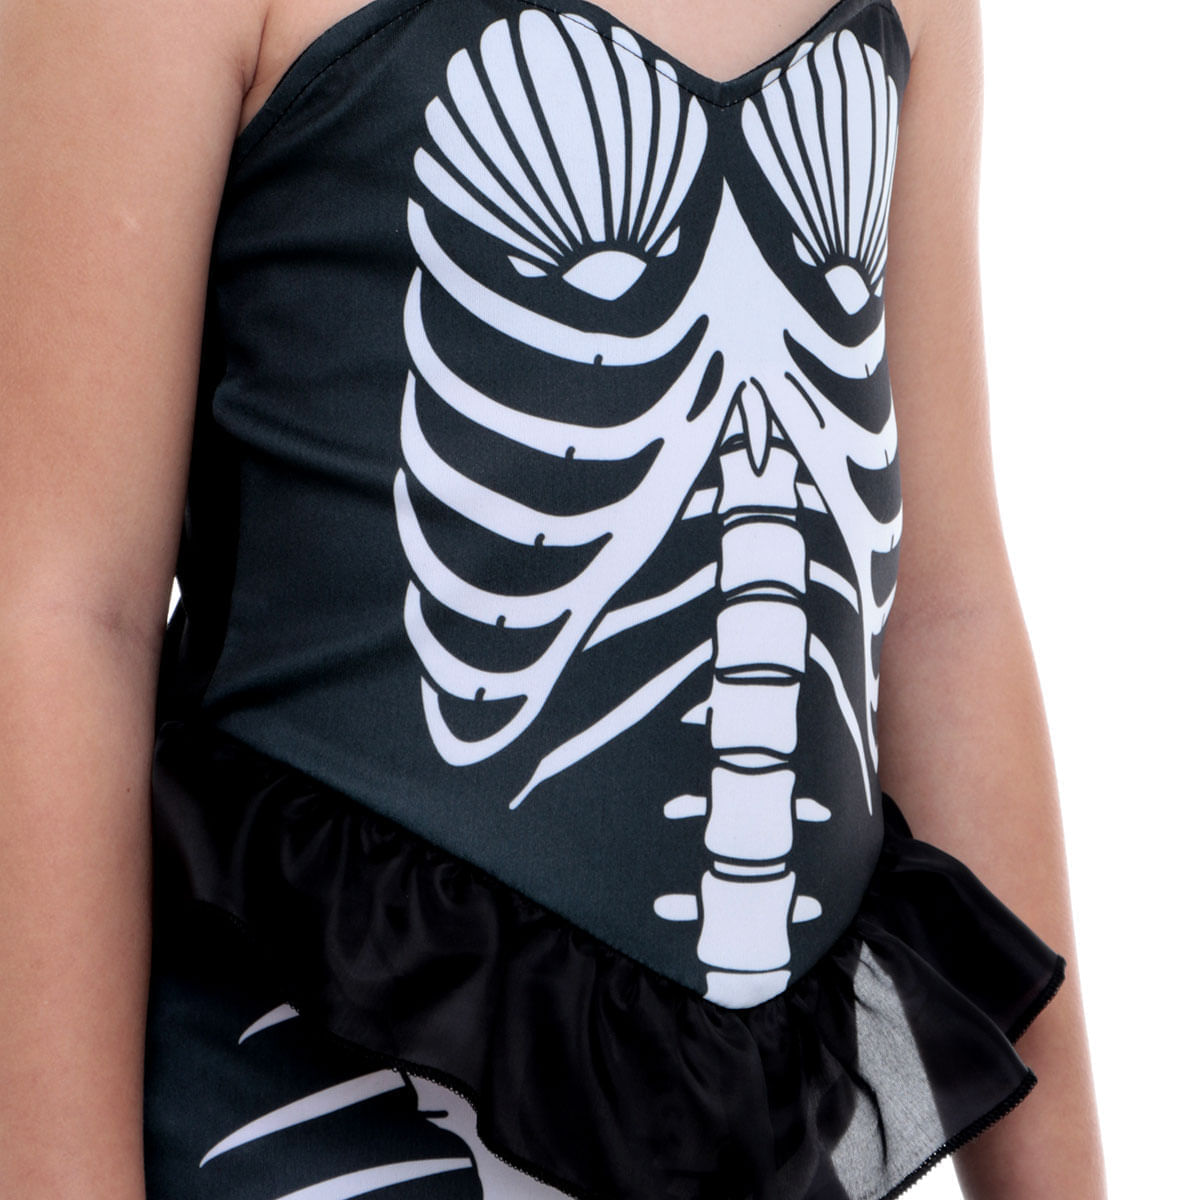 Fantasia Sereia Infantil Esqueleto de Halloween em Promoção na